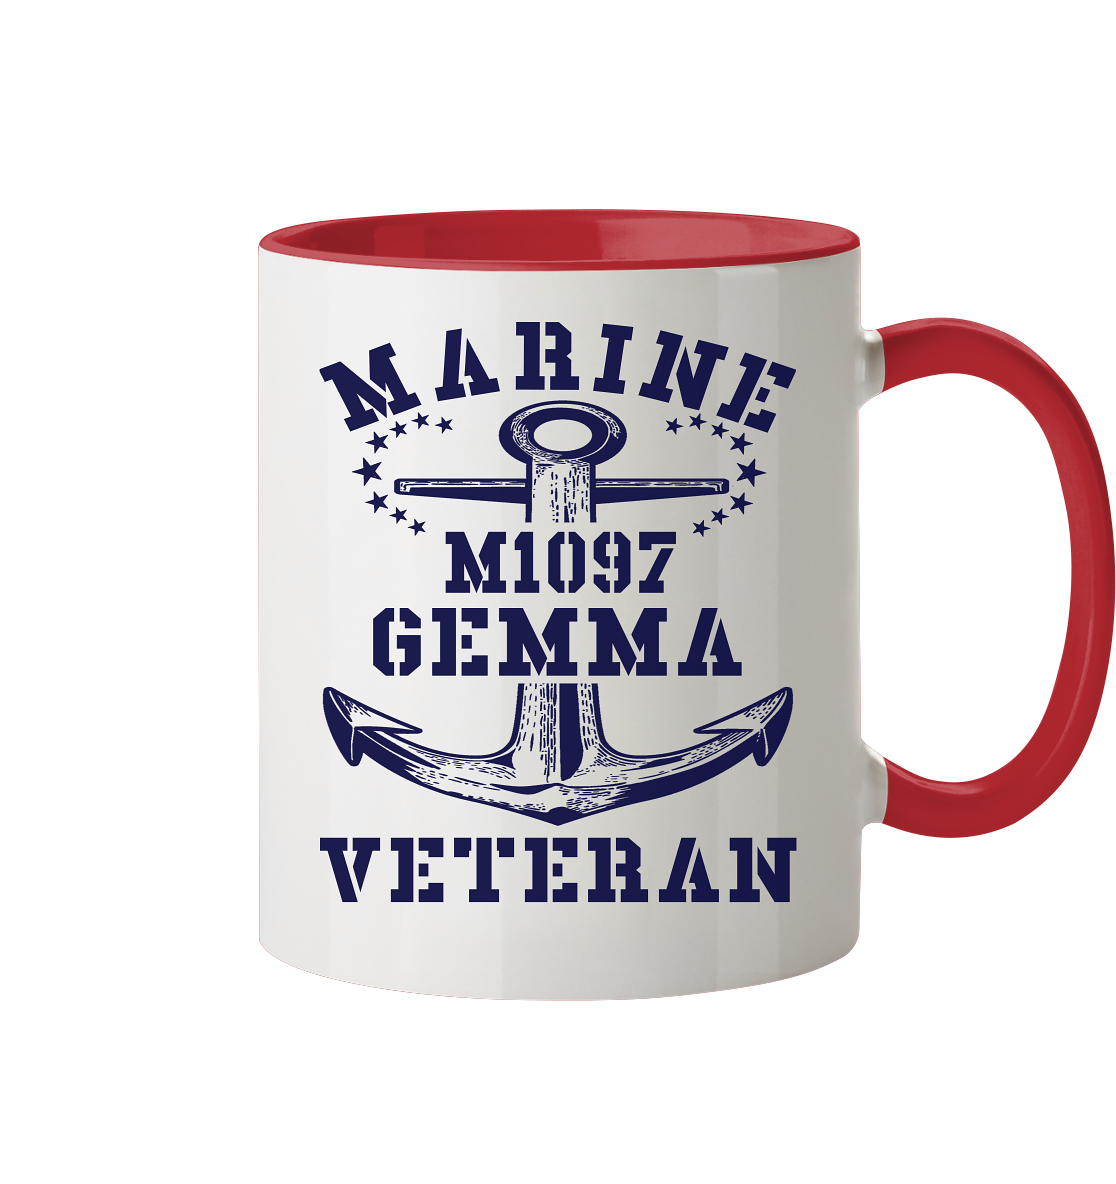 SM-Boot M1097 GEMMA Marine Veteran - Tasse zweifarbig